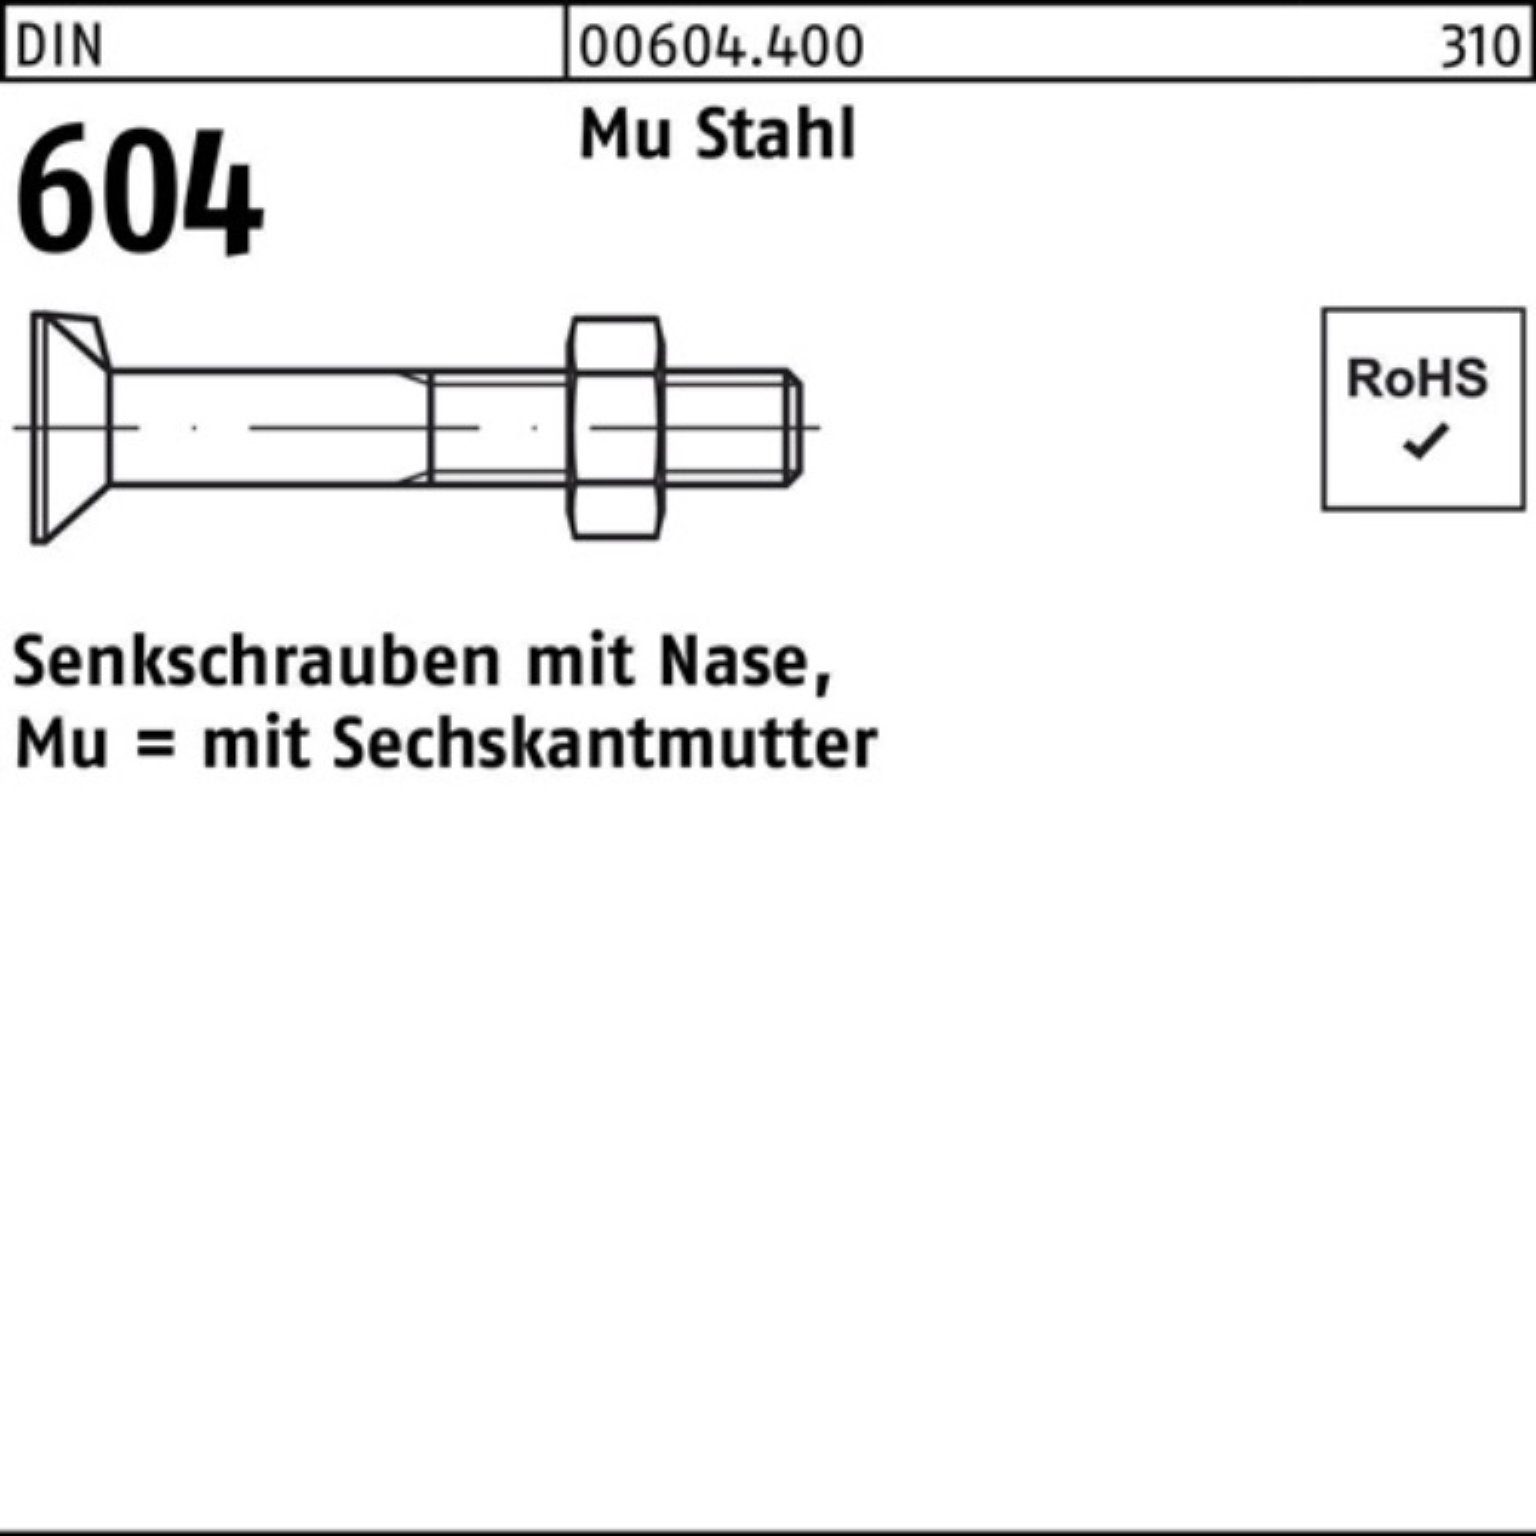 Reyher Senkschraube 100er Pack Senkschraube DIN 604 Nase/6-ktmutter M20x 75 Mu Stahl 4.6 2